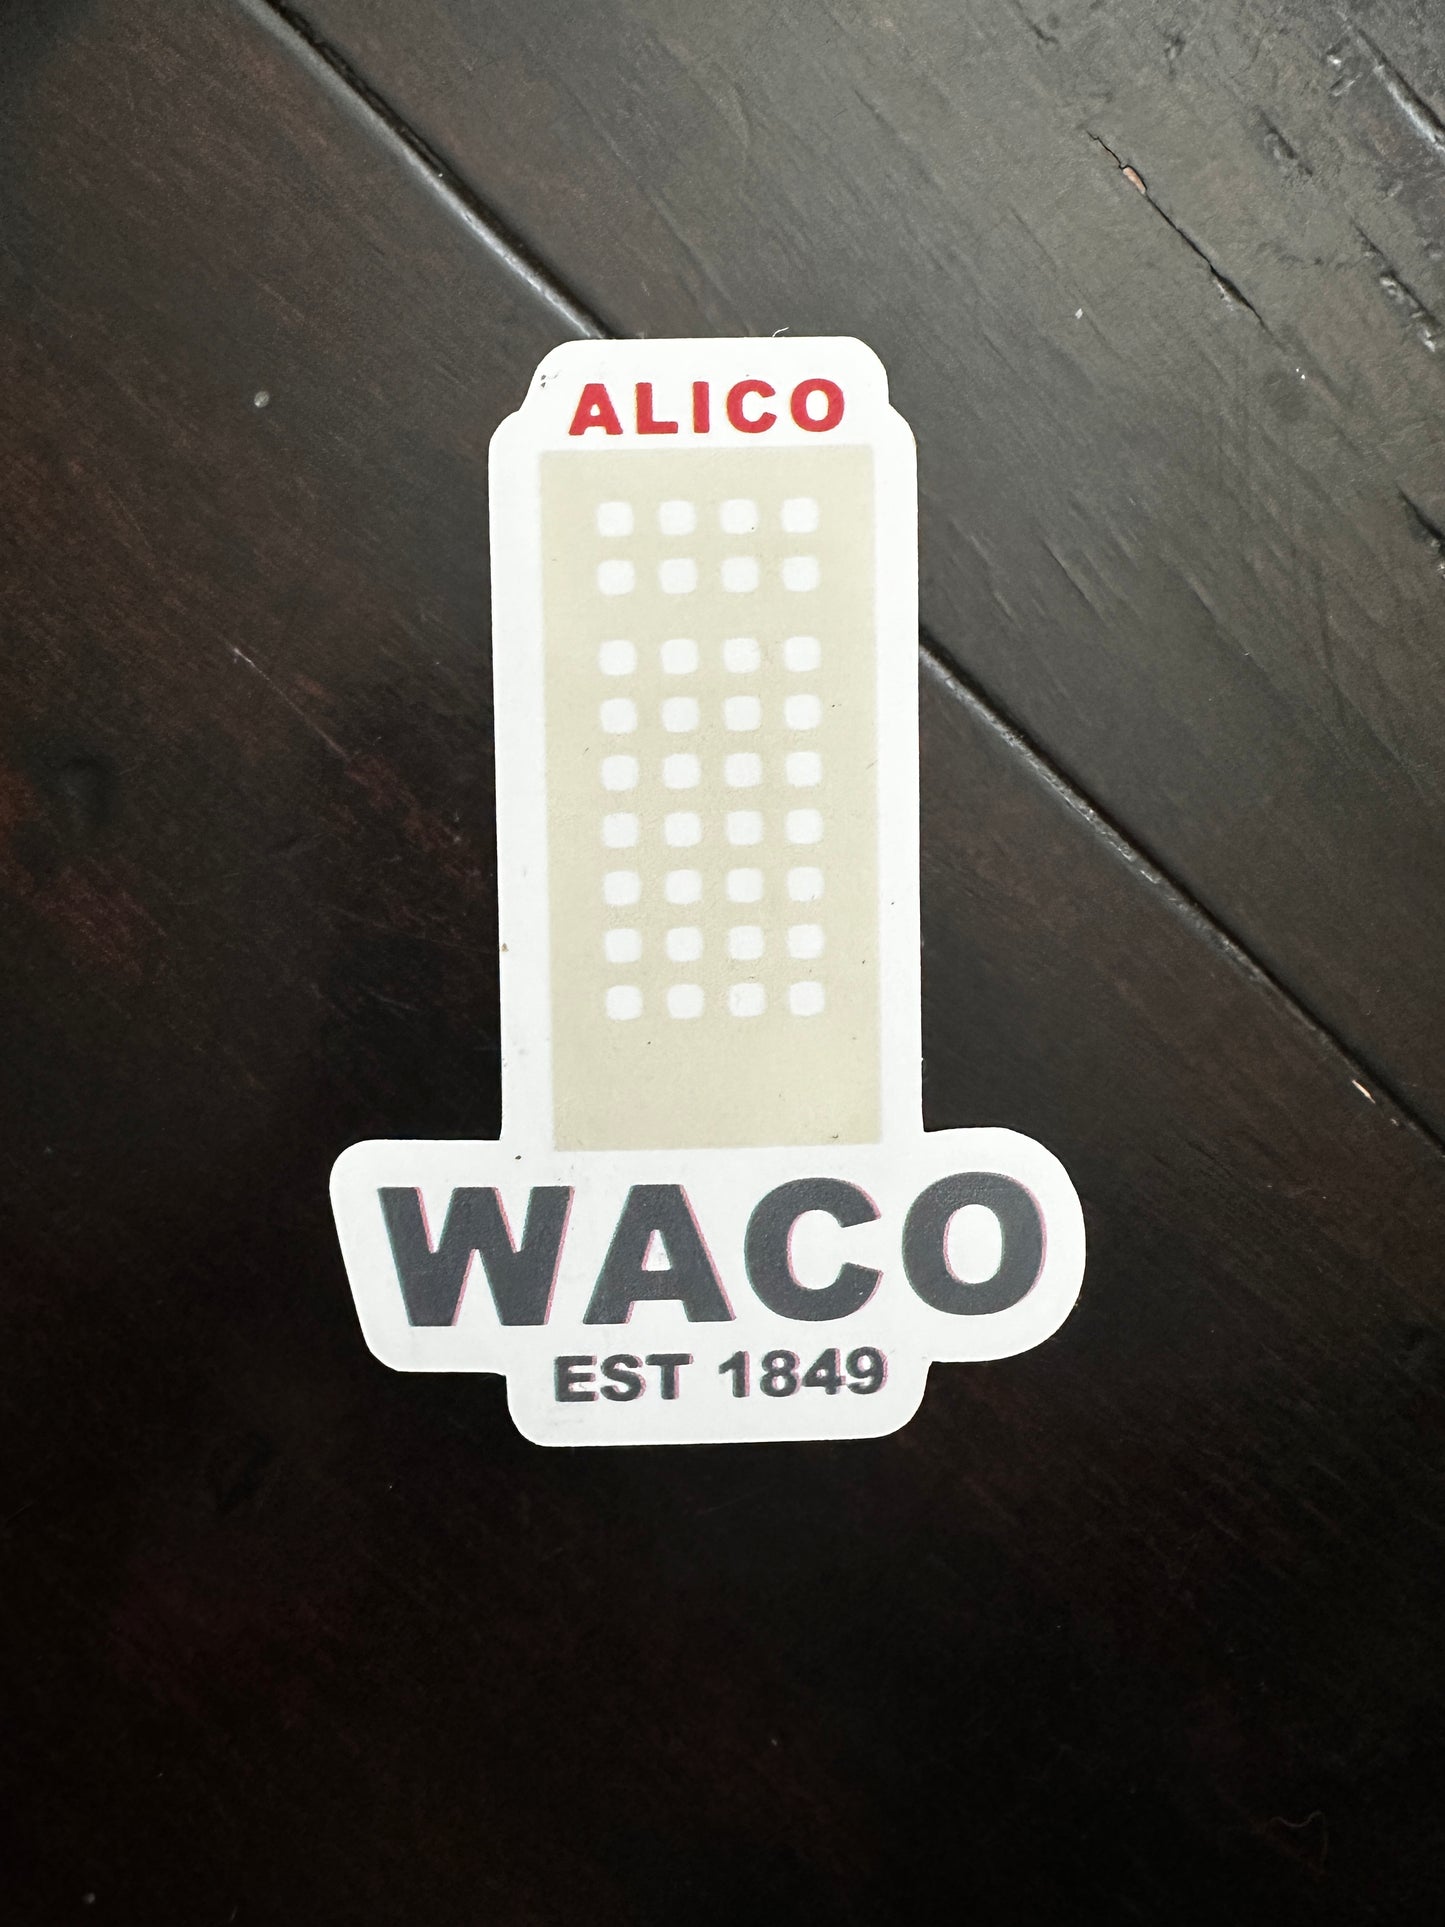 waco alico sticker